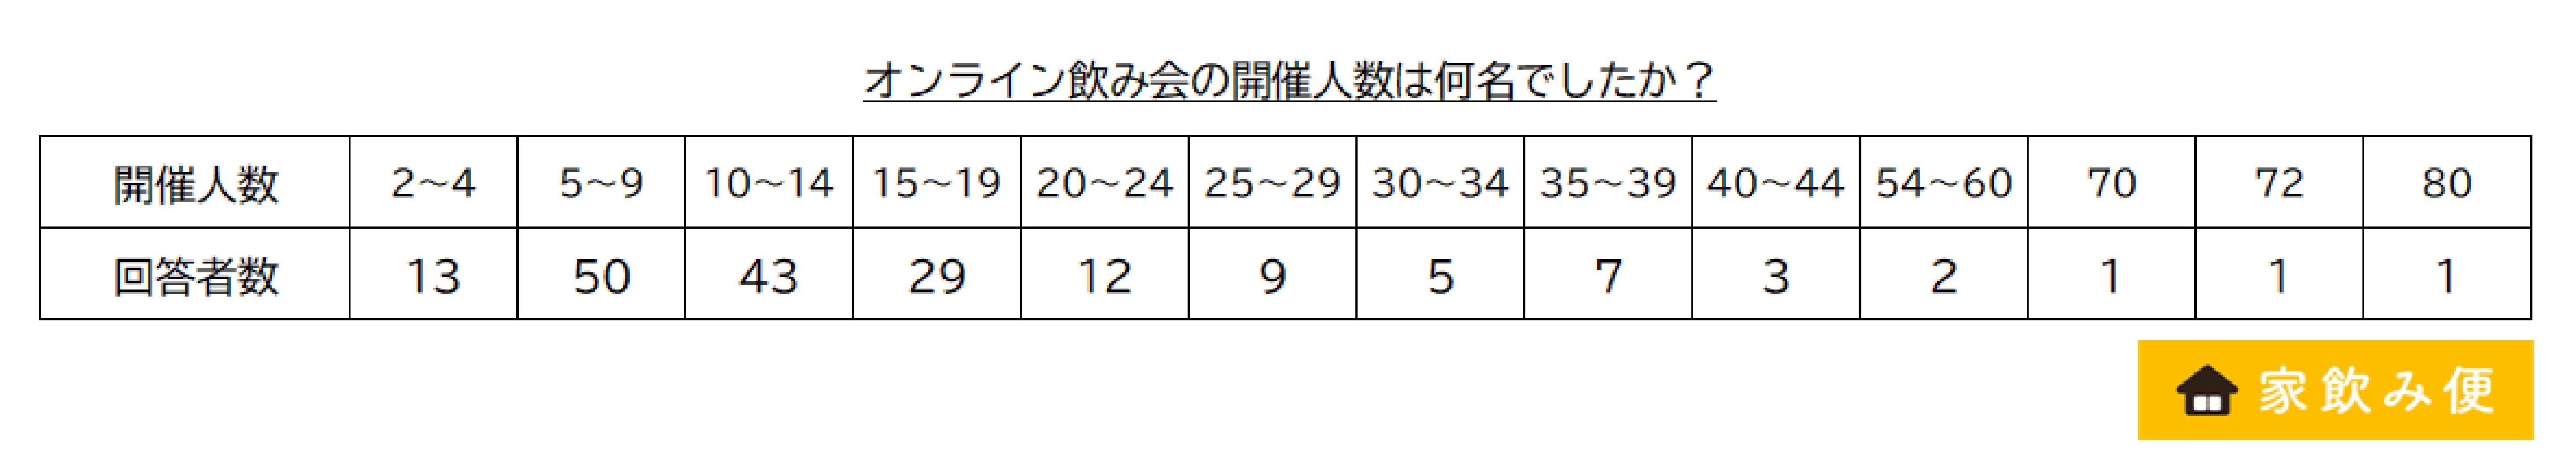  _700_http://www.apcompany.jp/news/2021/05/06/%E9%96%8B%E5%82%AC%E4%BA%BA%E6%95%B0%E5%88%86%E5%B8%83.jpg